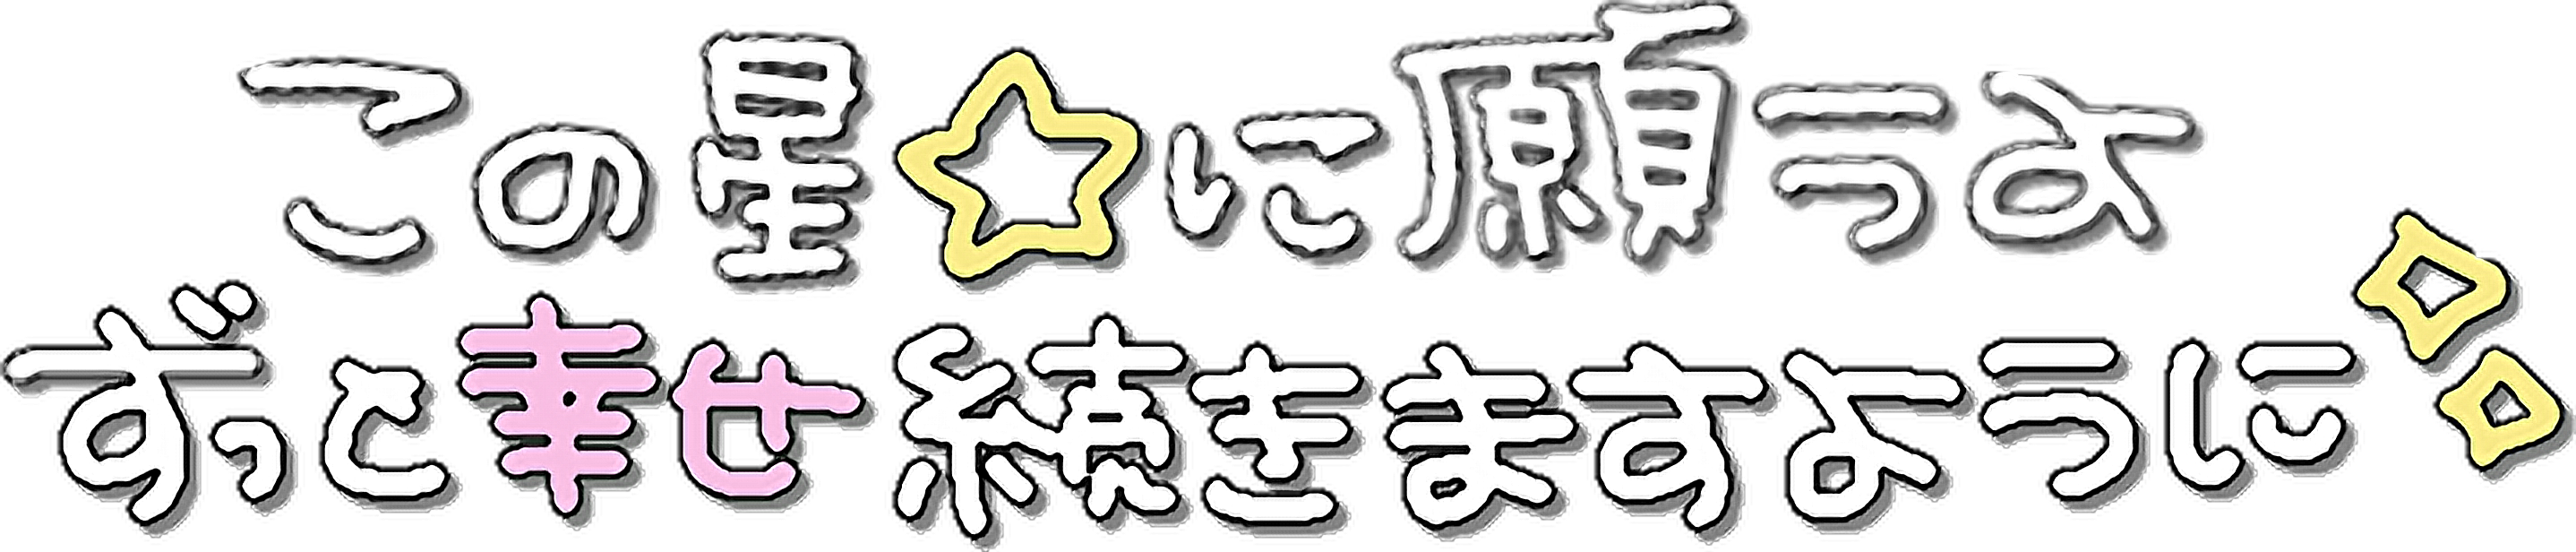 プリクラ 量産型 文字 ヲタク Sticker By 來